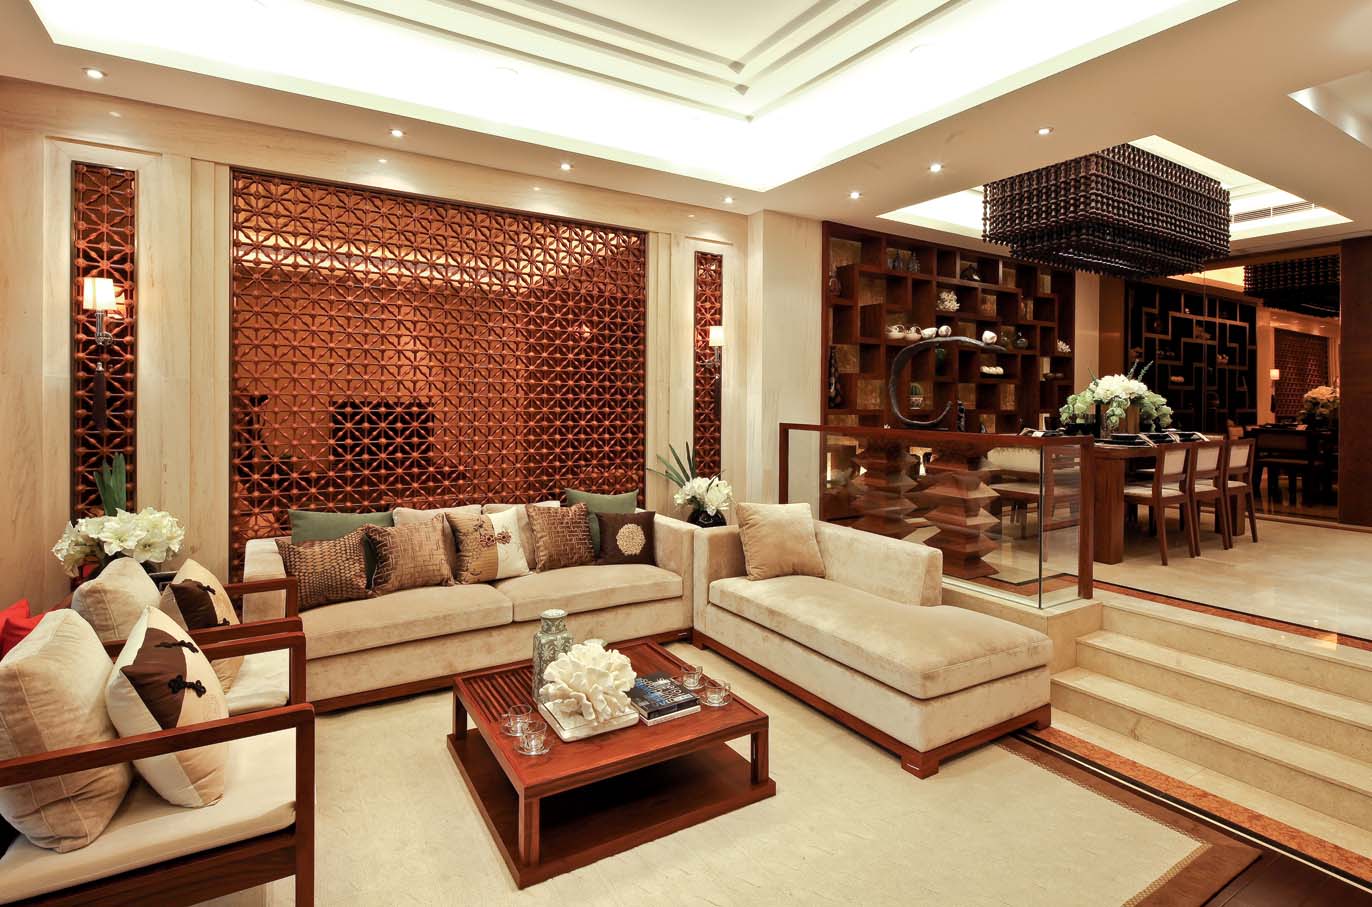 新中式 中式风格 室内设计 装修风格 装修设计 客厅图片来自别墅装修设计yan在新中式风格首创国际半岛的分享